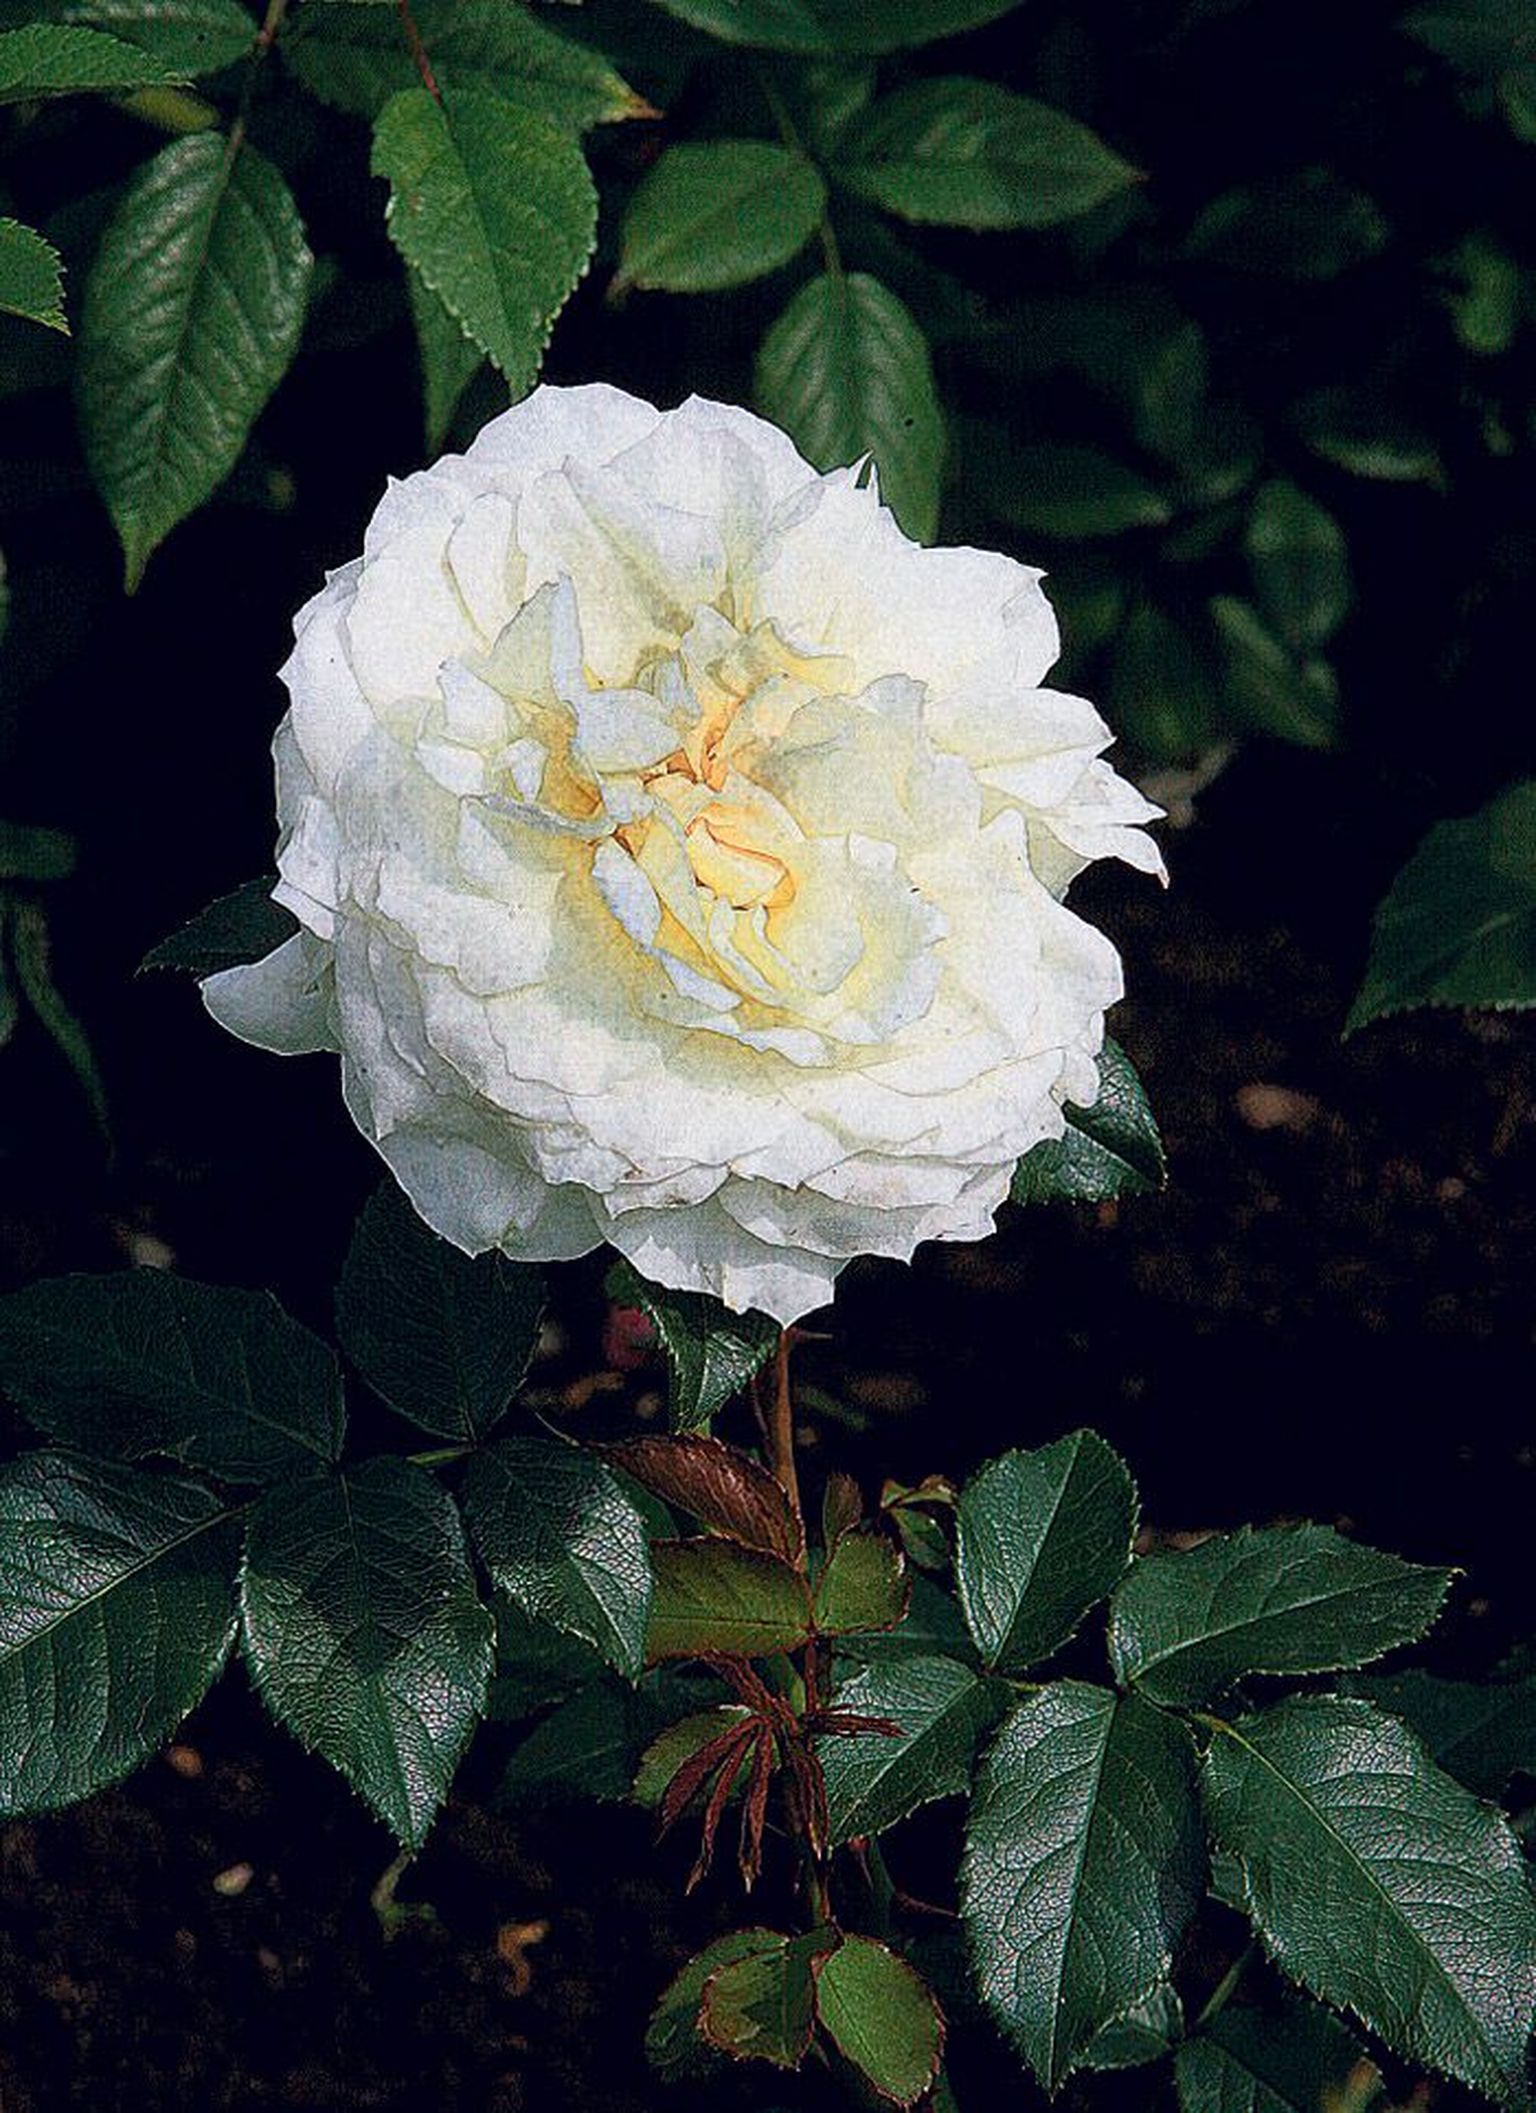 RMK Tartu puukooli rosaariumi üks uutest roosidest, põõsasroos «Tchaikovski» on aretatud 2000. aastal Prantsusmaal.